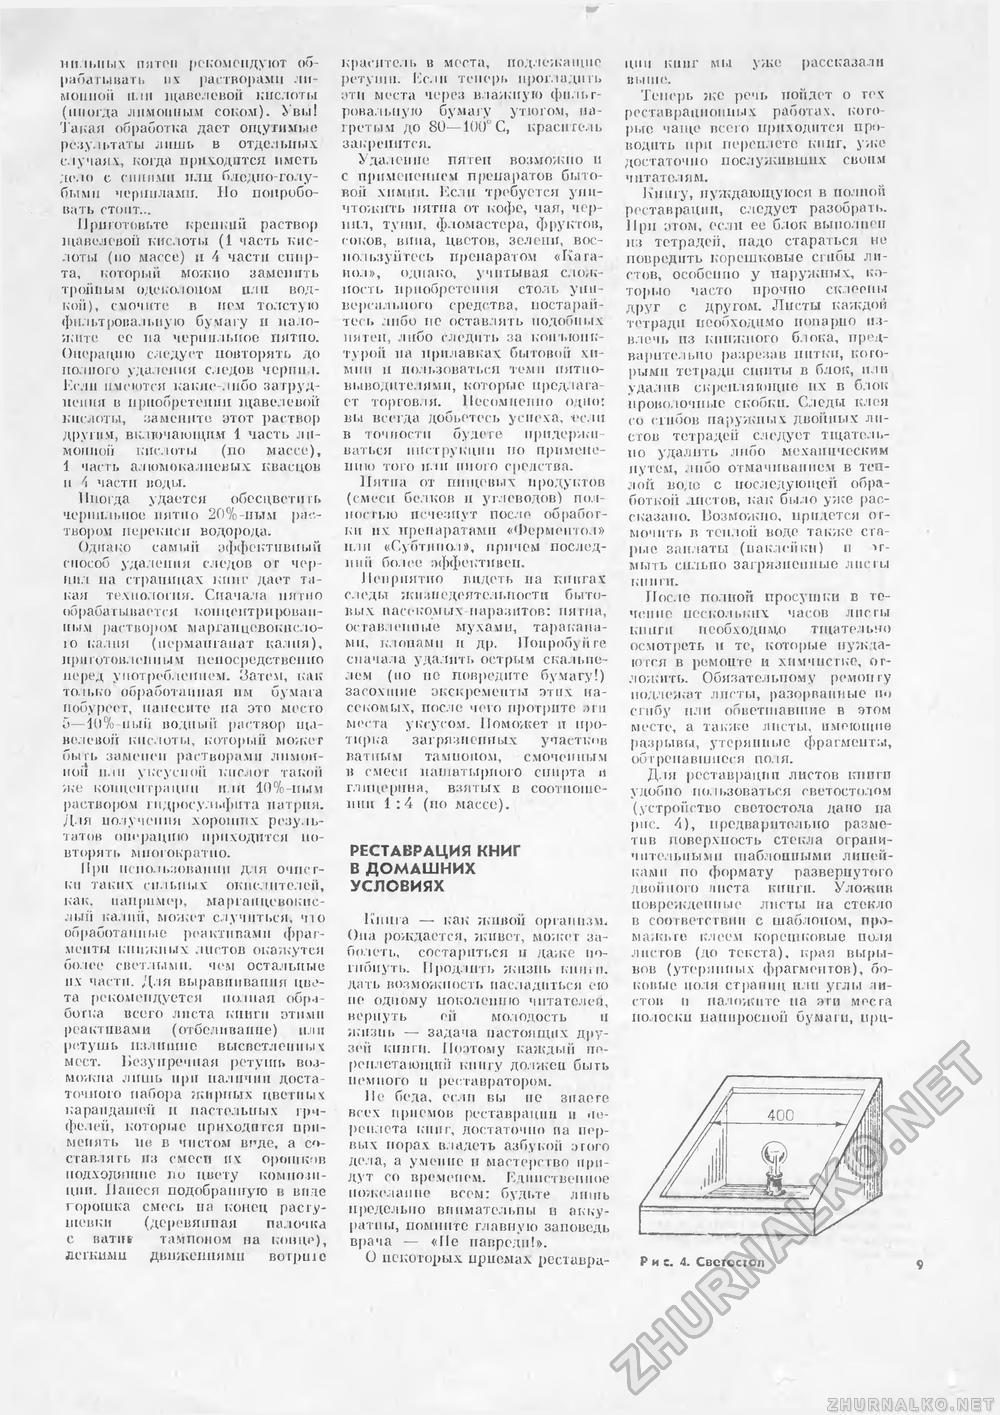 Сделай Сам (Знание) 1989-01 переплет книг, страница 9